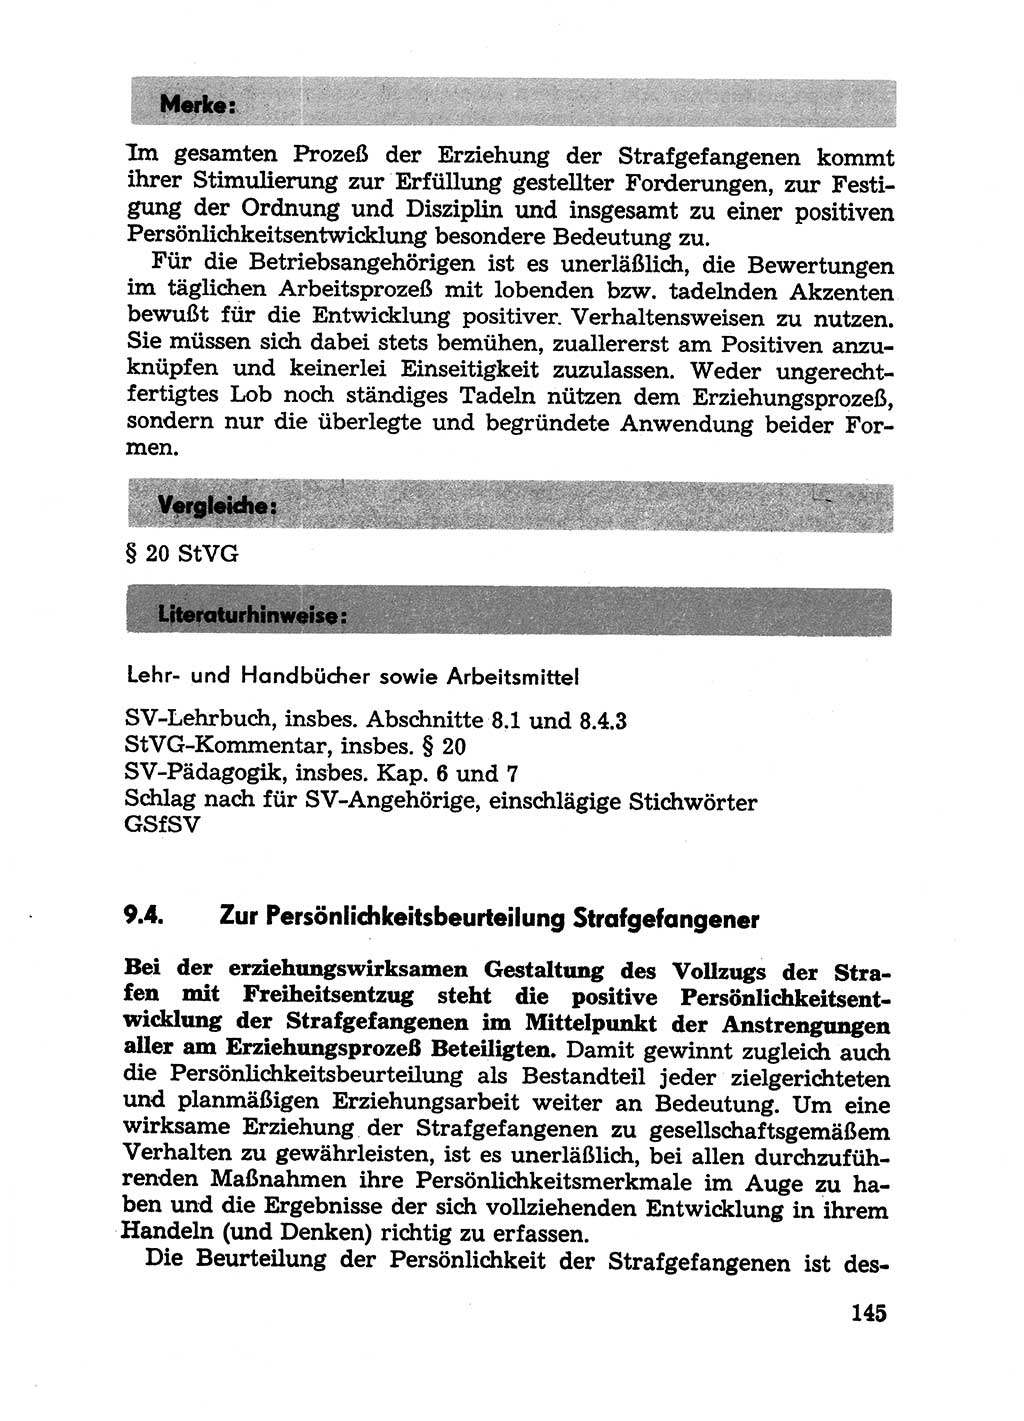 Handbuch für Betriebsangehörige, Abteilung Strafvollzug (SV) [Ministerium des Innern (MdI) Deutsche Demokratische Republik (DDR)] 1981, Seite 145 (Hb. BA Abt. SV MdI DDR 1981, S. 145)